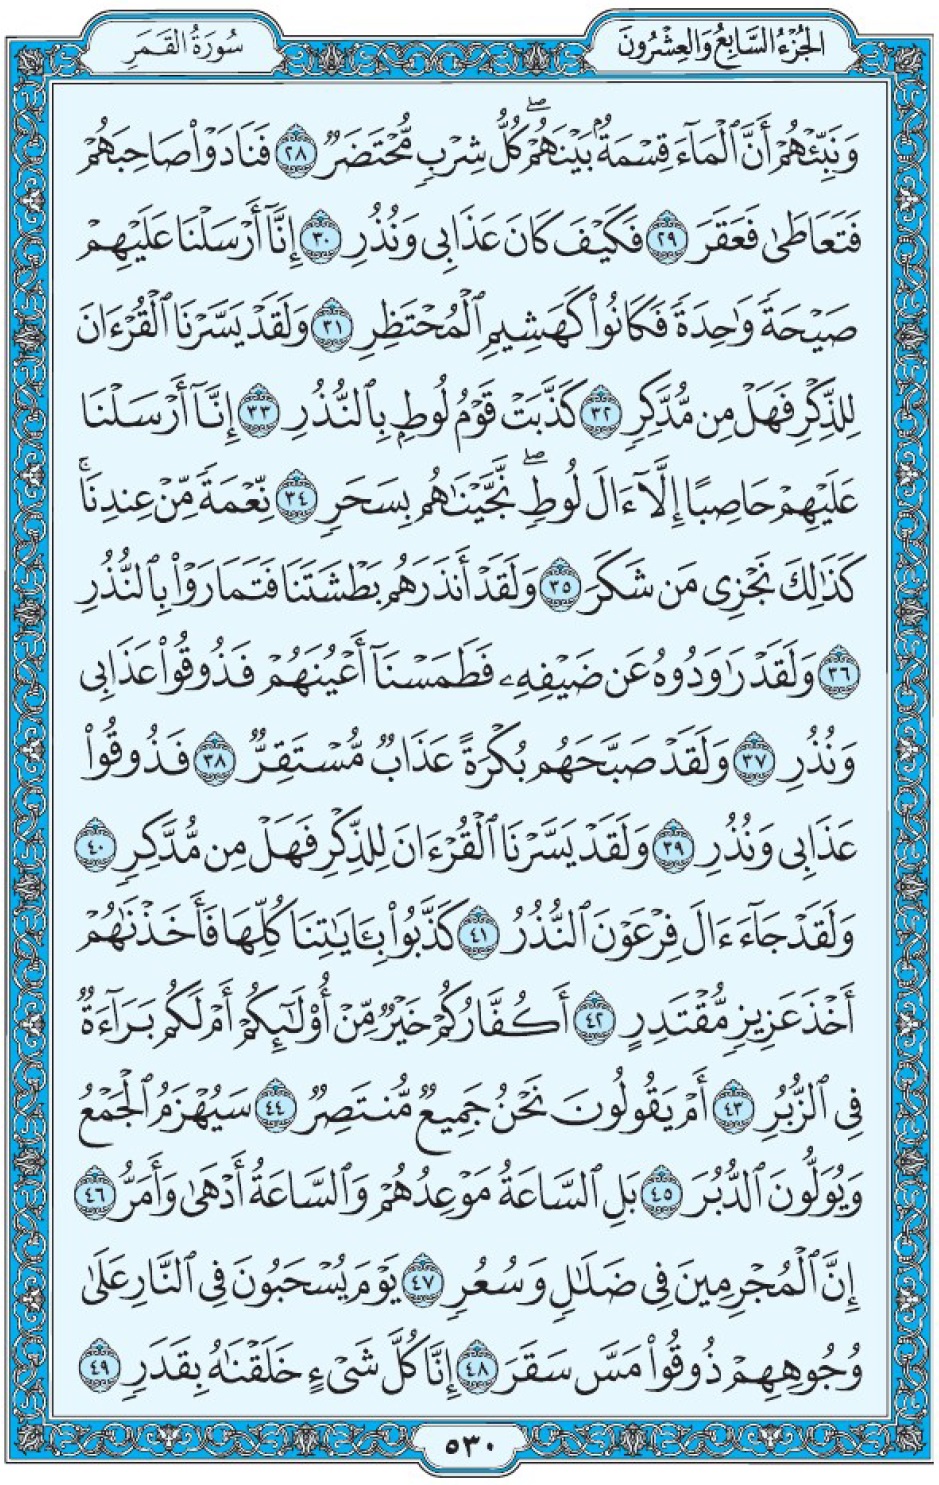 Коран Мединский мусхаф страница 530, сура аль-Камар, аят 28-49